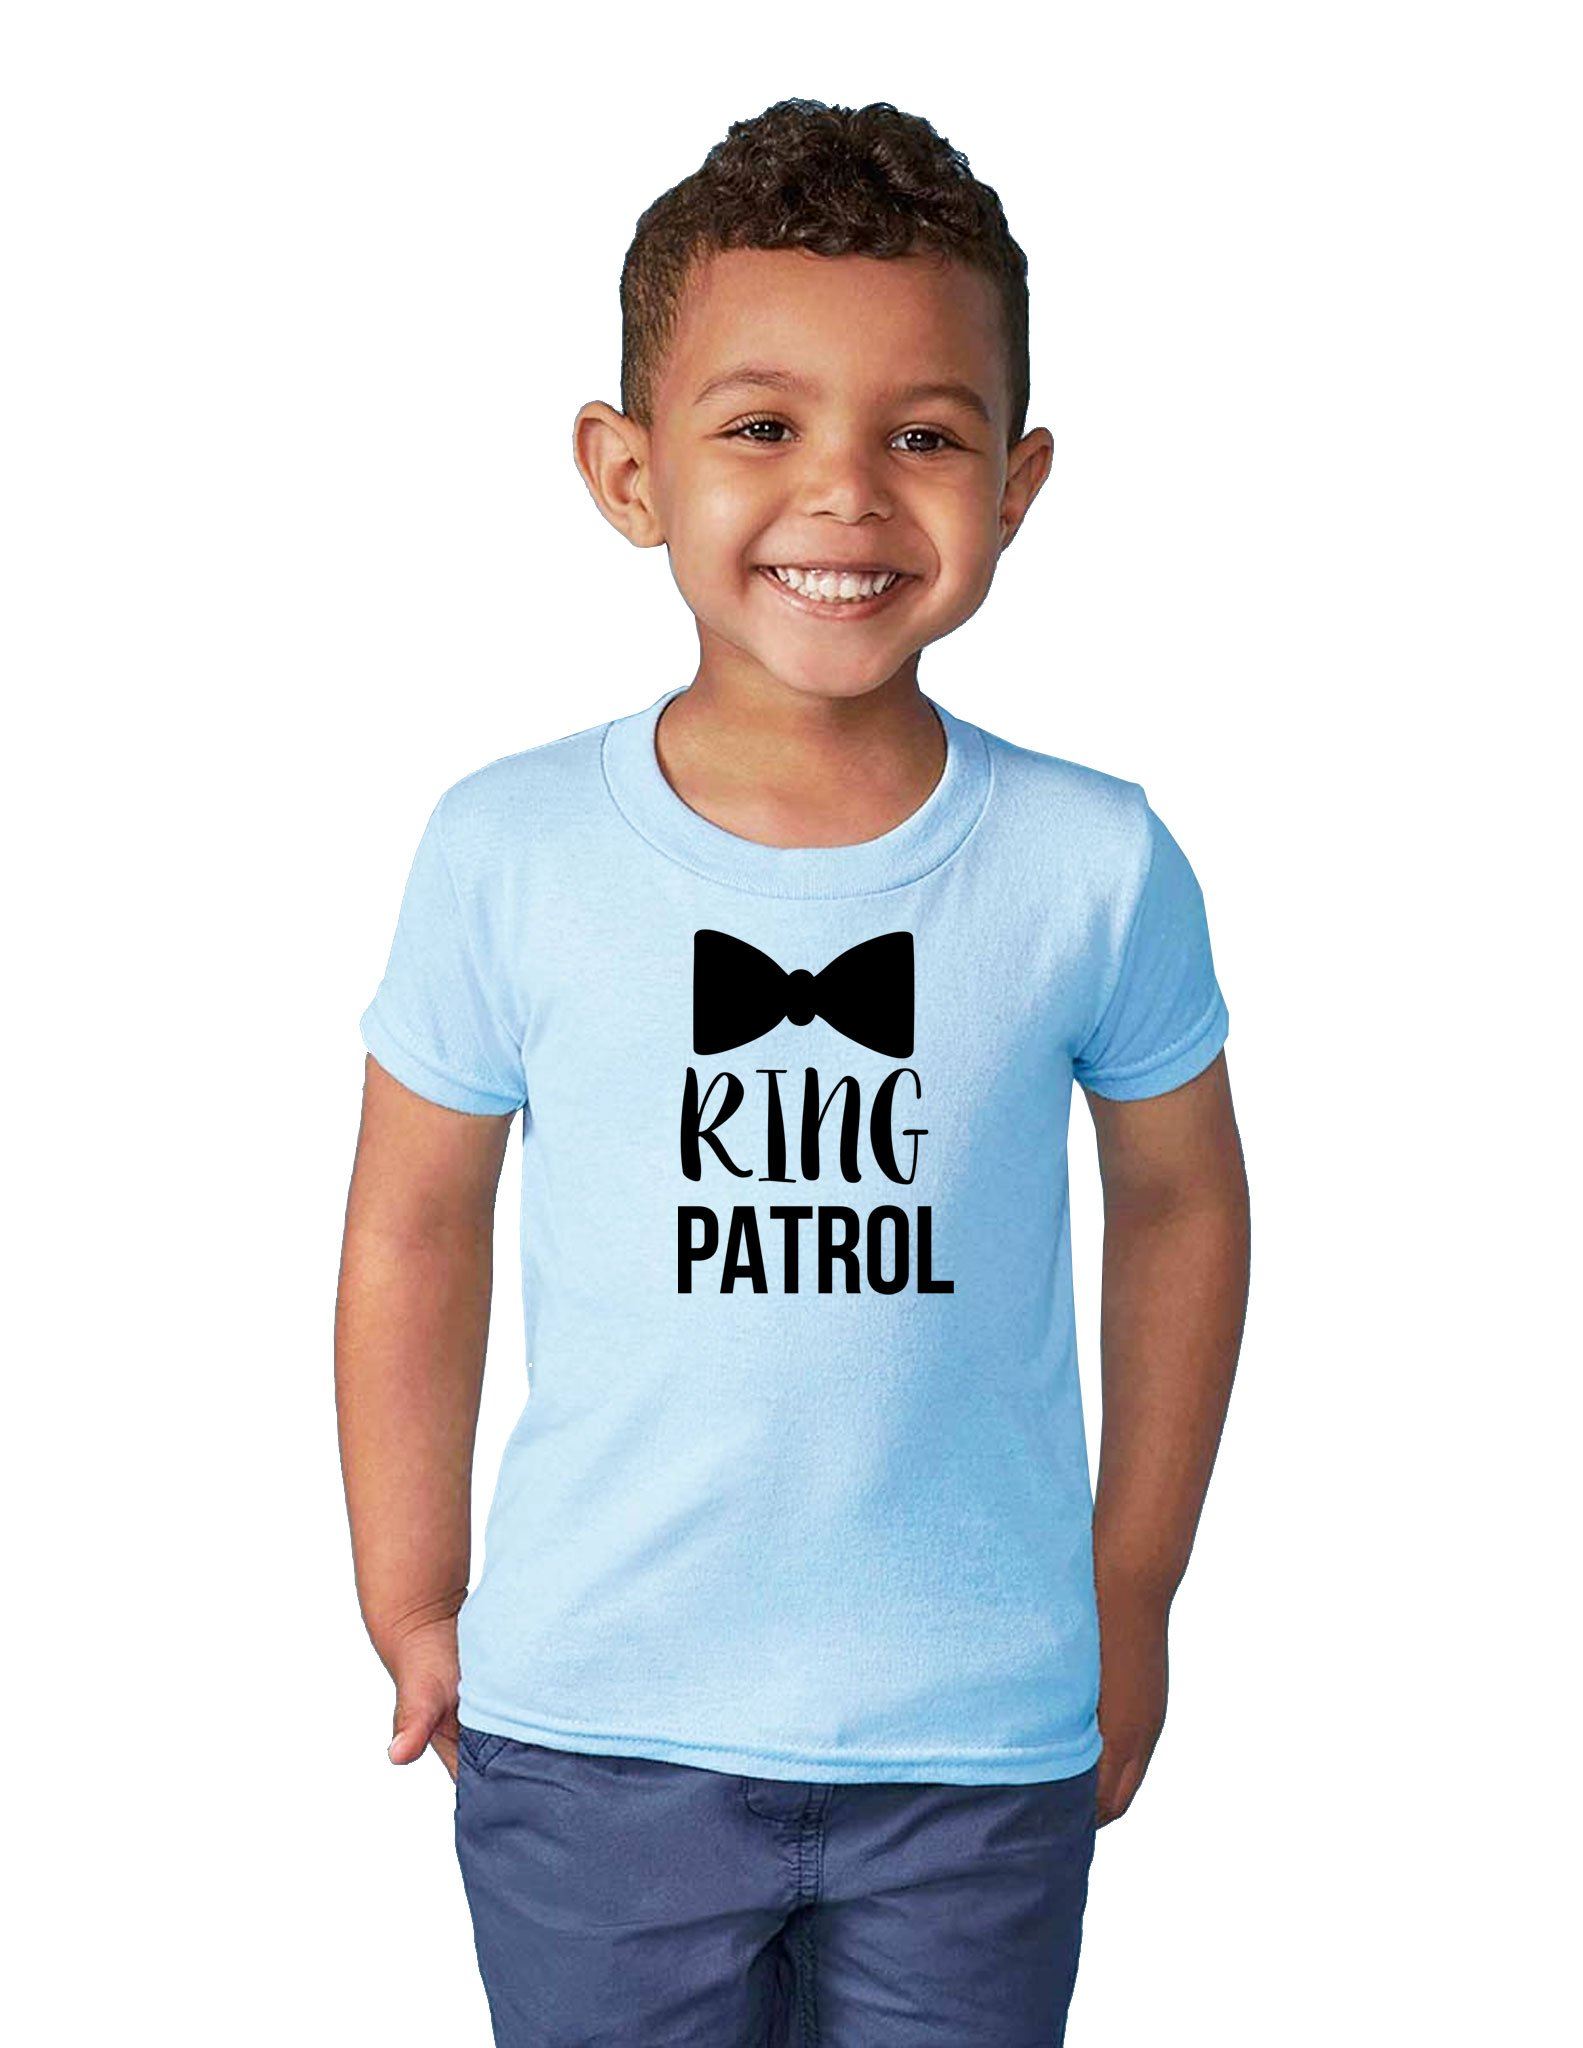 Ring Patrol - Toddler Tee